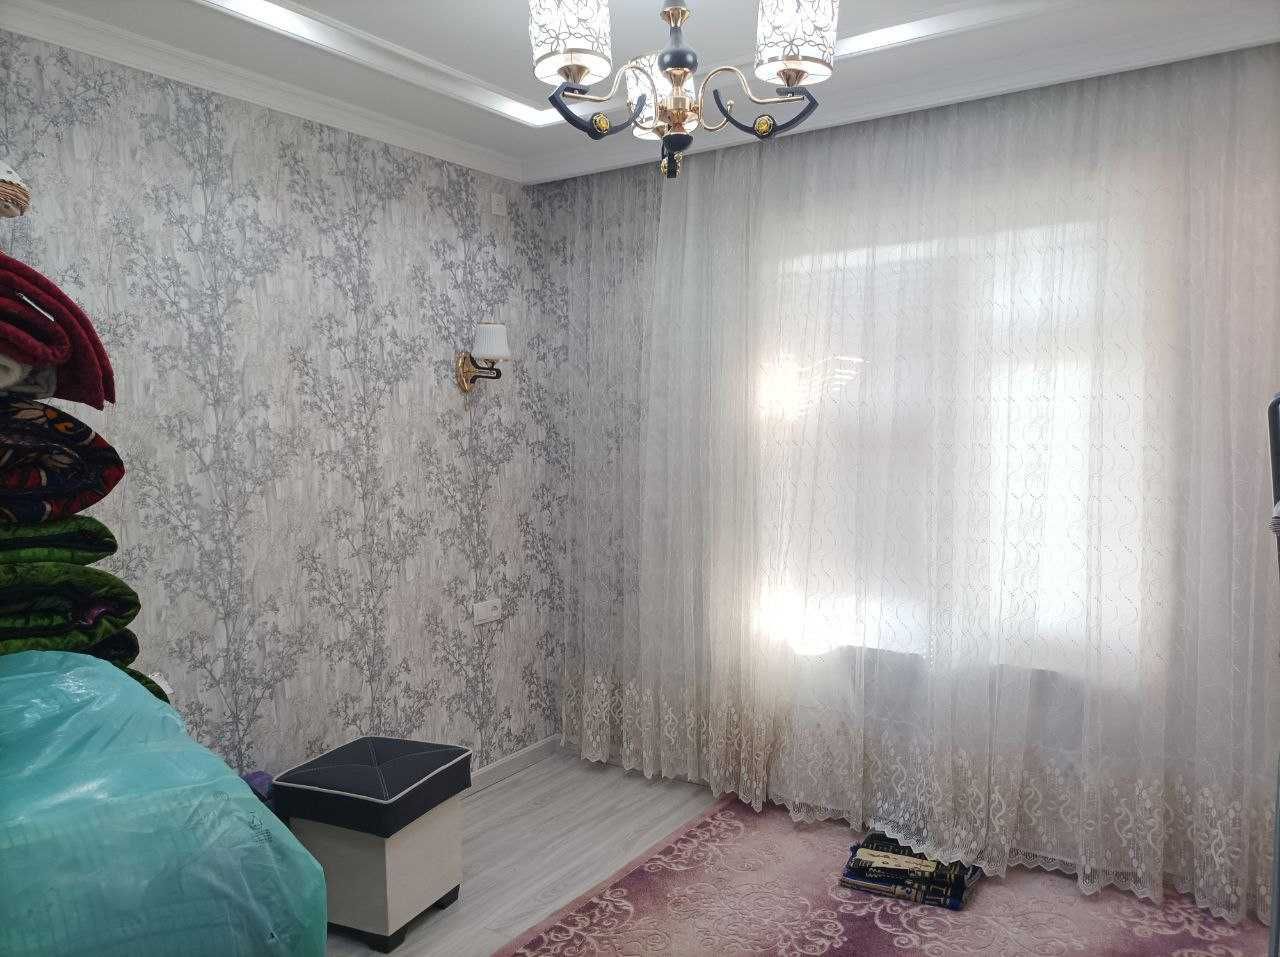 Продается 2-х комнатная квартира в Алмазаре (RM)